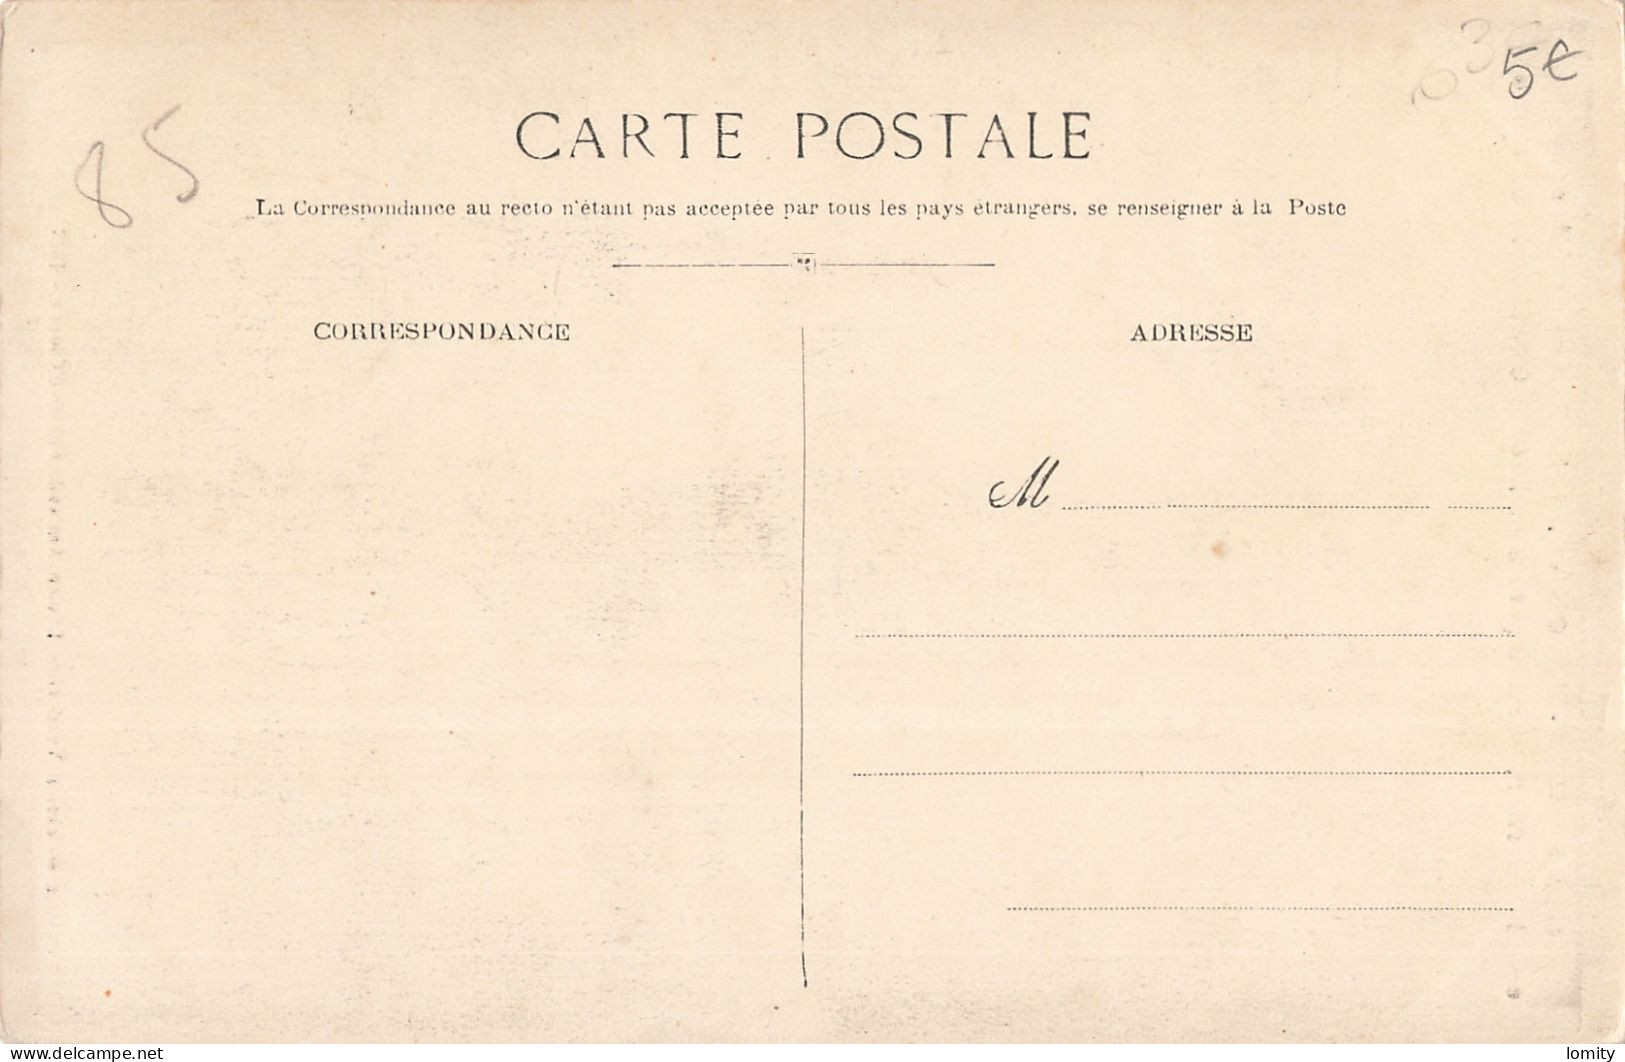 Destockage lot de 8 cartes postales CPA de Vendée les Sables d' Olonne